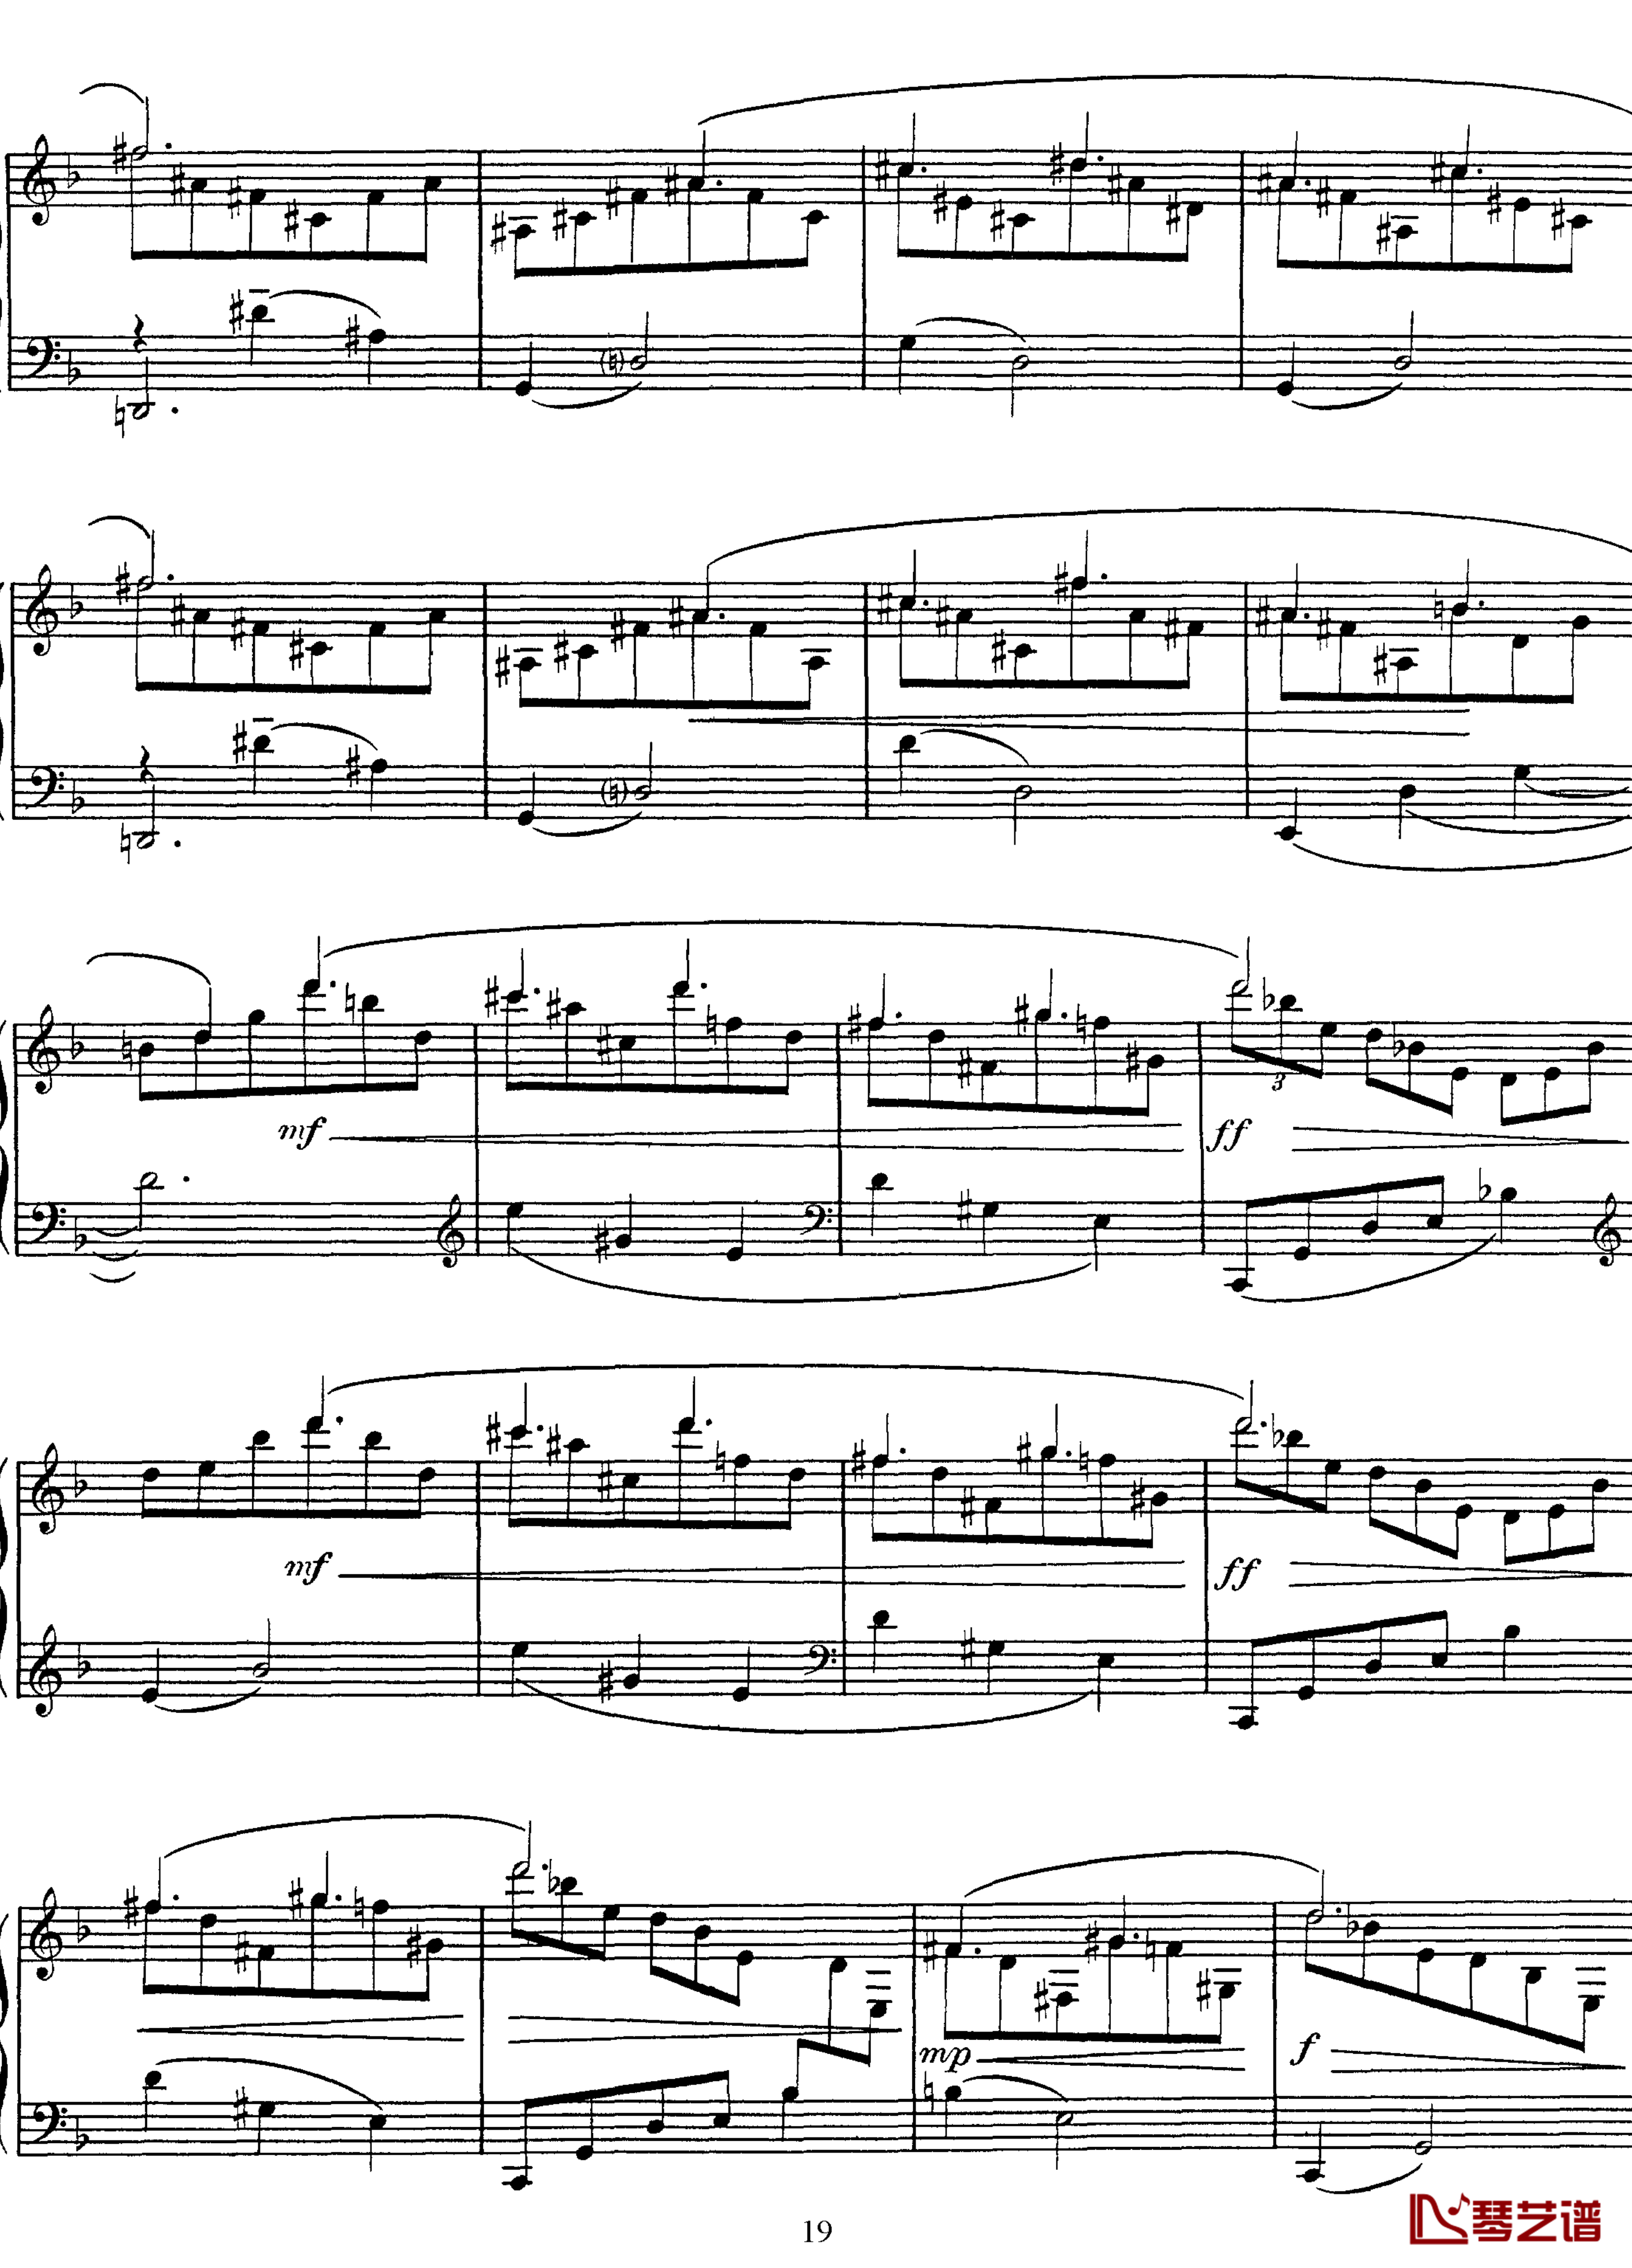 高贵而伤感的圆舞曲钢琴谱-拉威尔-Ravel19